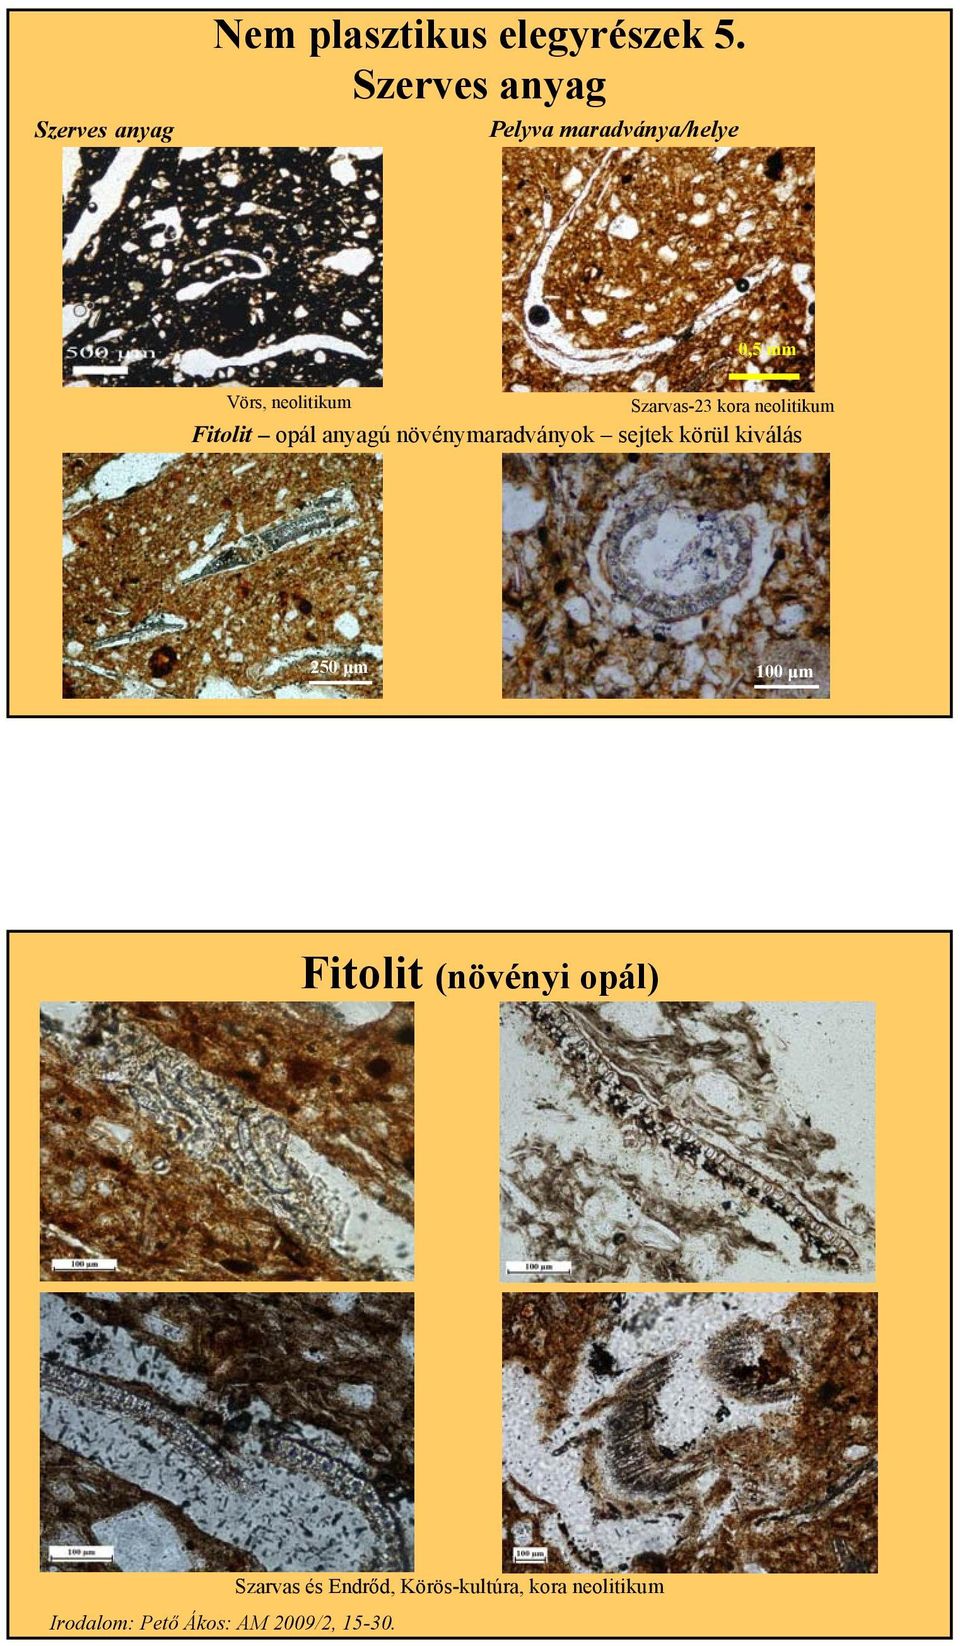 neolitikum Fitolit opál anyagú növénymaradványok sejtek körül kiválás 250 μm